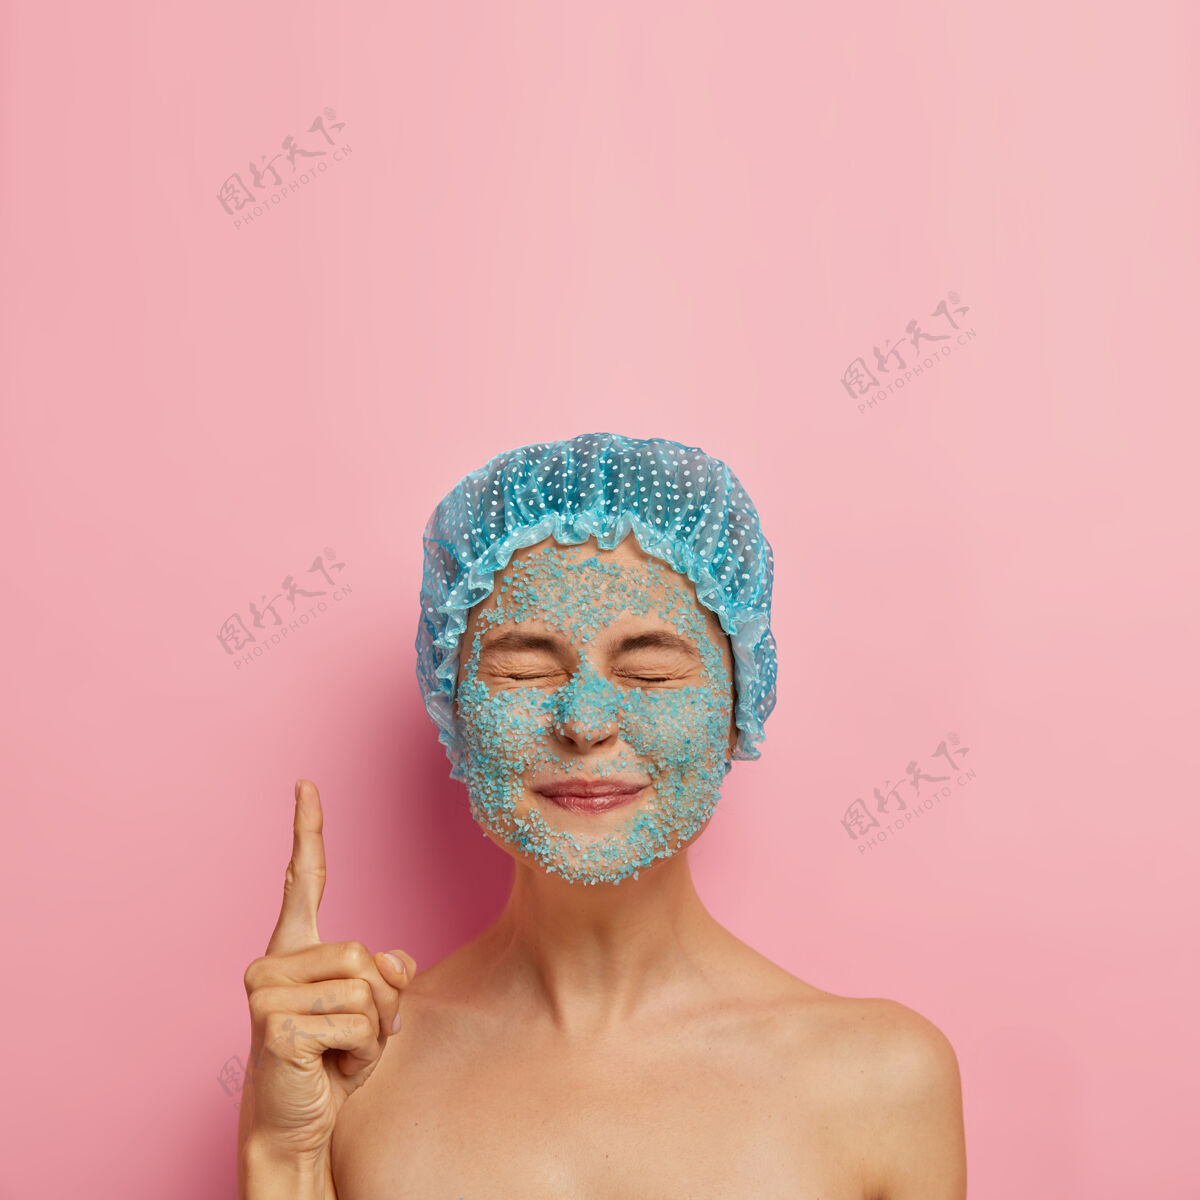 裸露满意的美女垂直形象脸上有蓝色海盐擦洗 闭上眼睛食指朝上 戴浴帽 周末在水疗沙龙有问题的皮肤干燥 美容制度女人人人